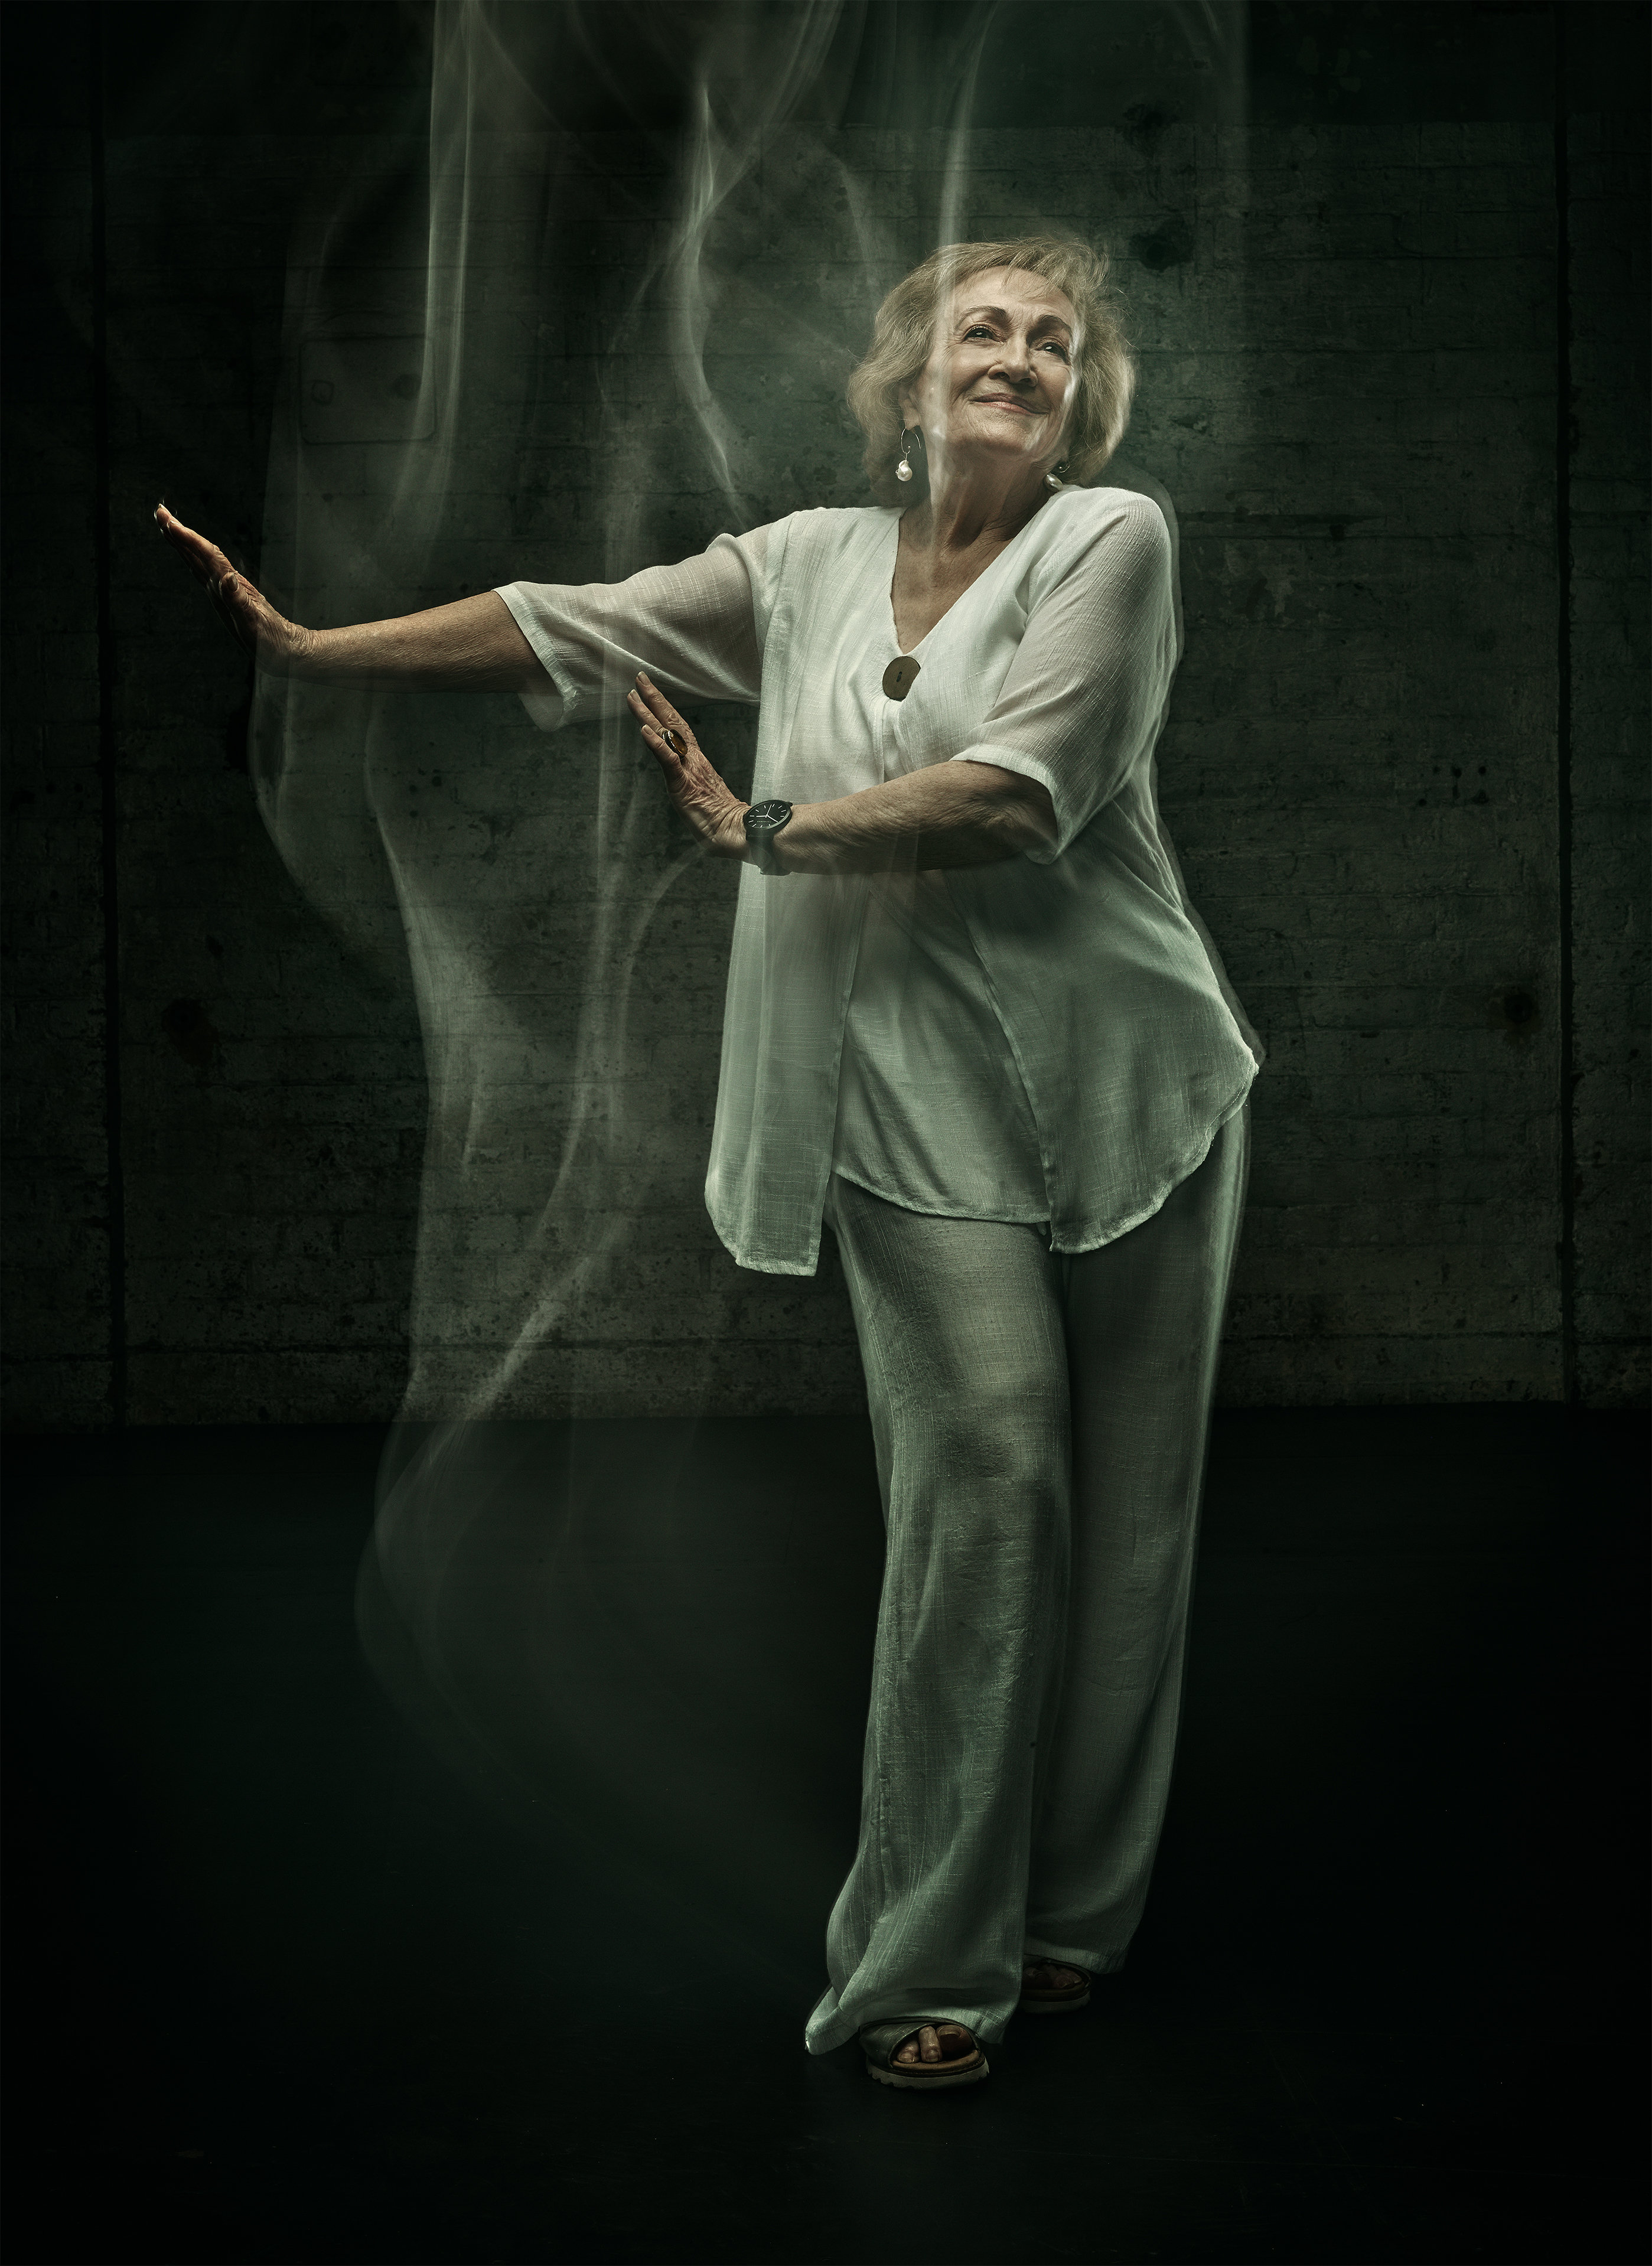 Elderly woman wearing white smiling standing dancing pose